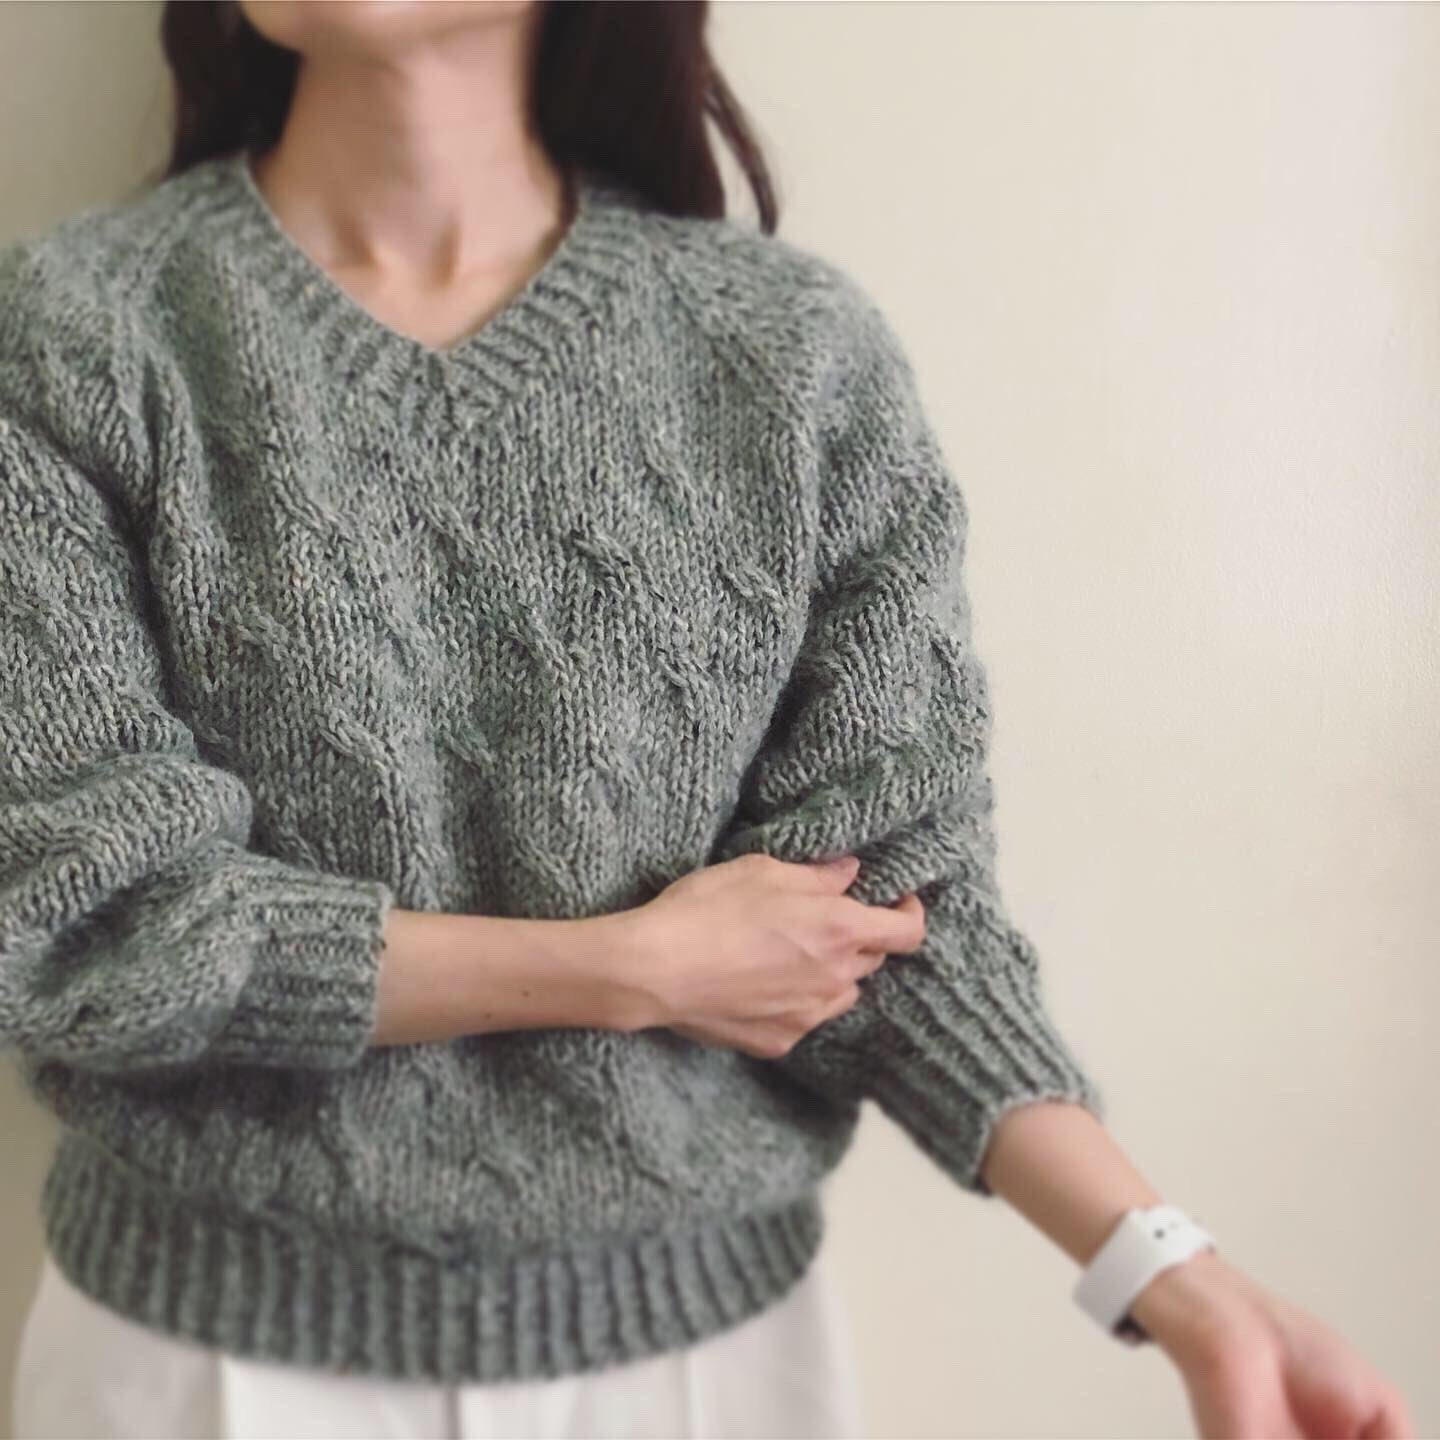 安い値段 Fynオリジナルデザインのセーターのキット 生地/糸